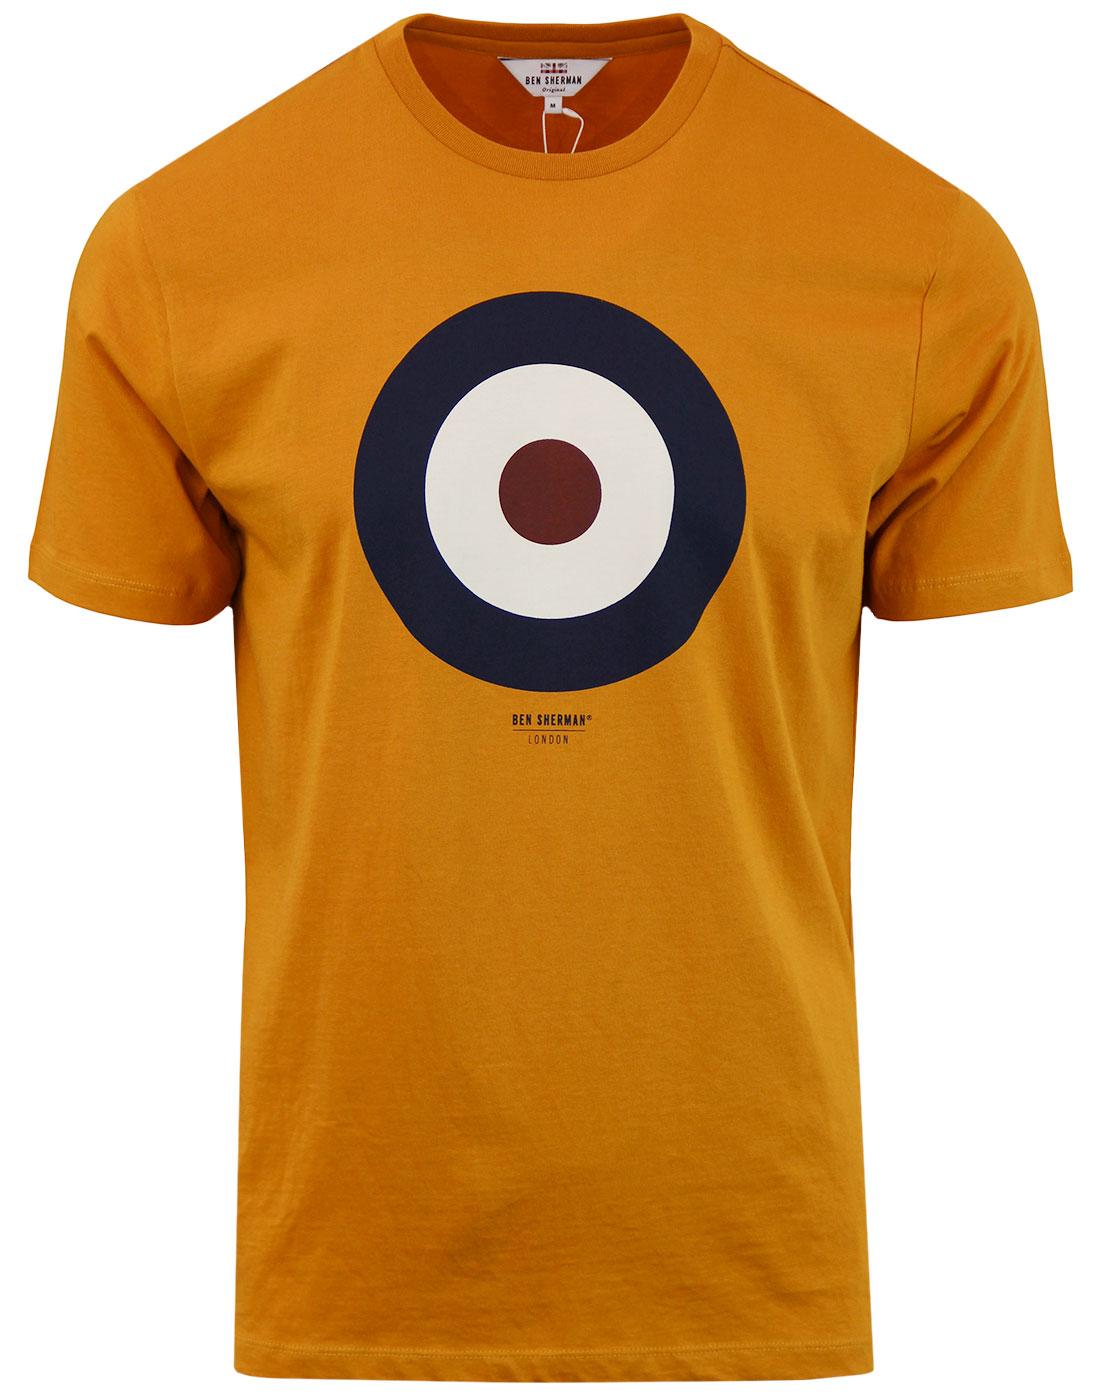 BEN SHERMAN 60s Pop Art Mod Target T-Shirt OCHRE